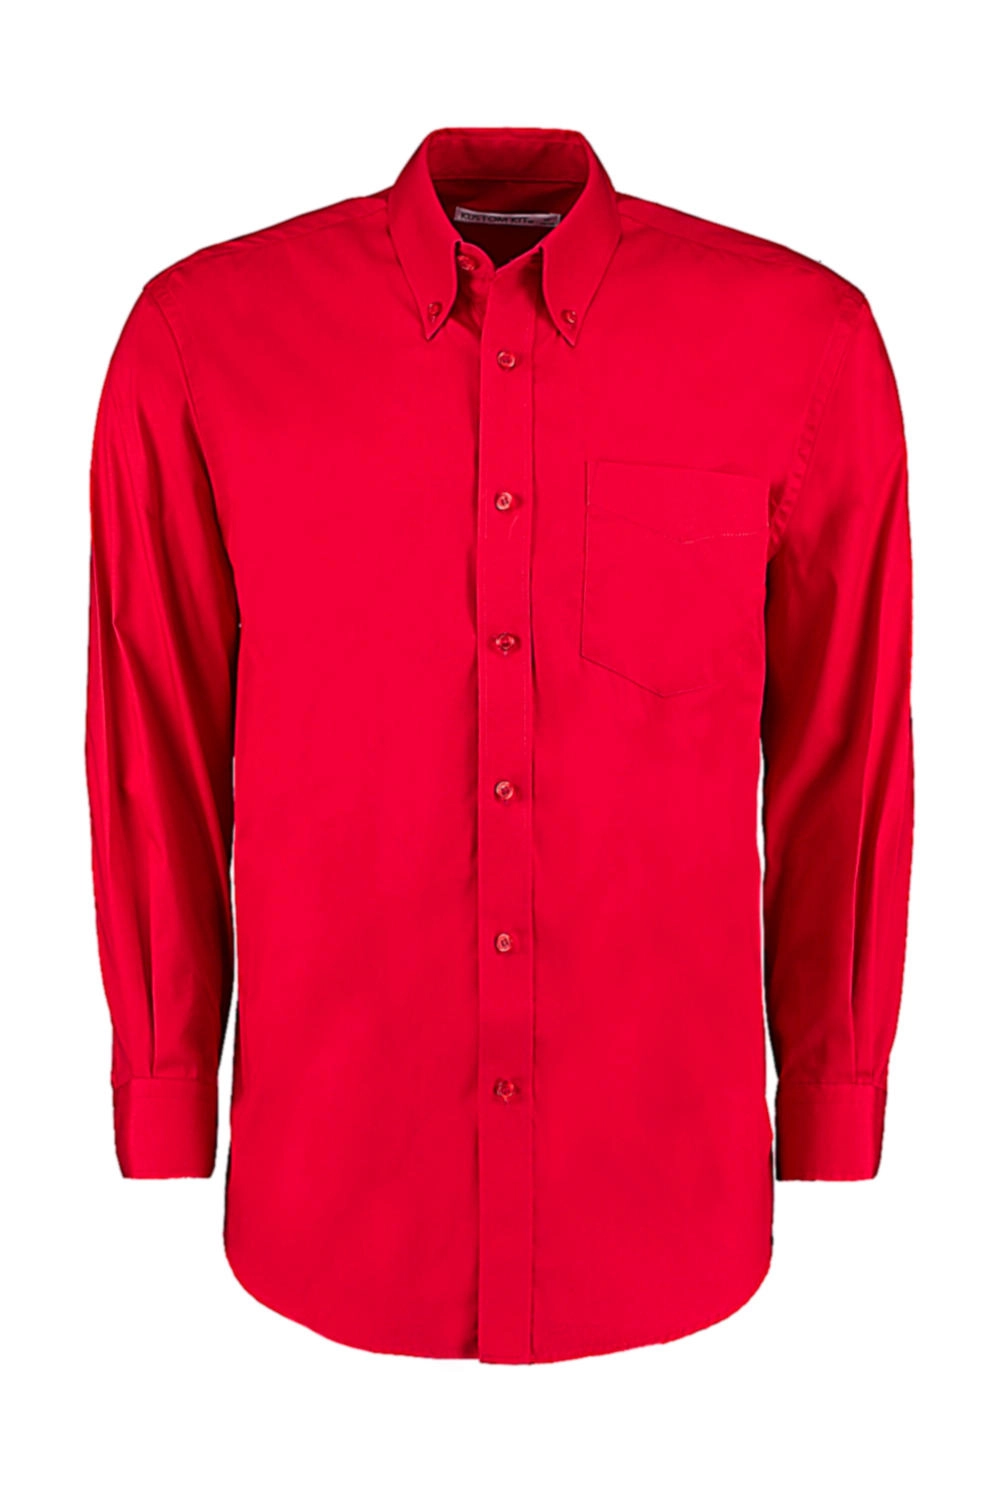 Classic Fit Premium Oxford Shirt zum Besticken und Bedrucken in der Farbe Red mit Ihren Logo, Schriftzug oder Motiv.